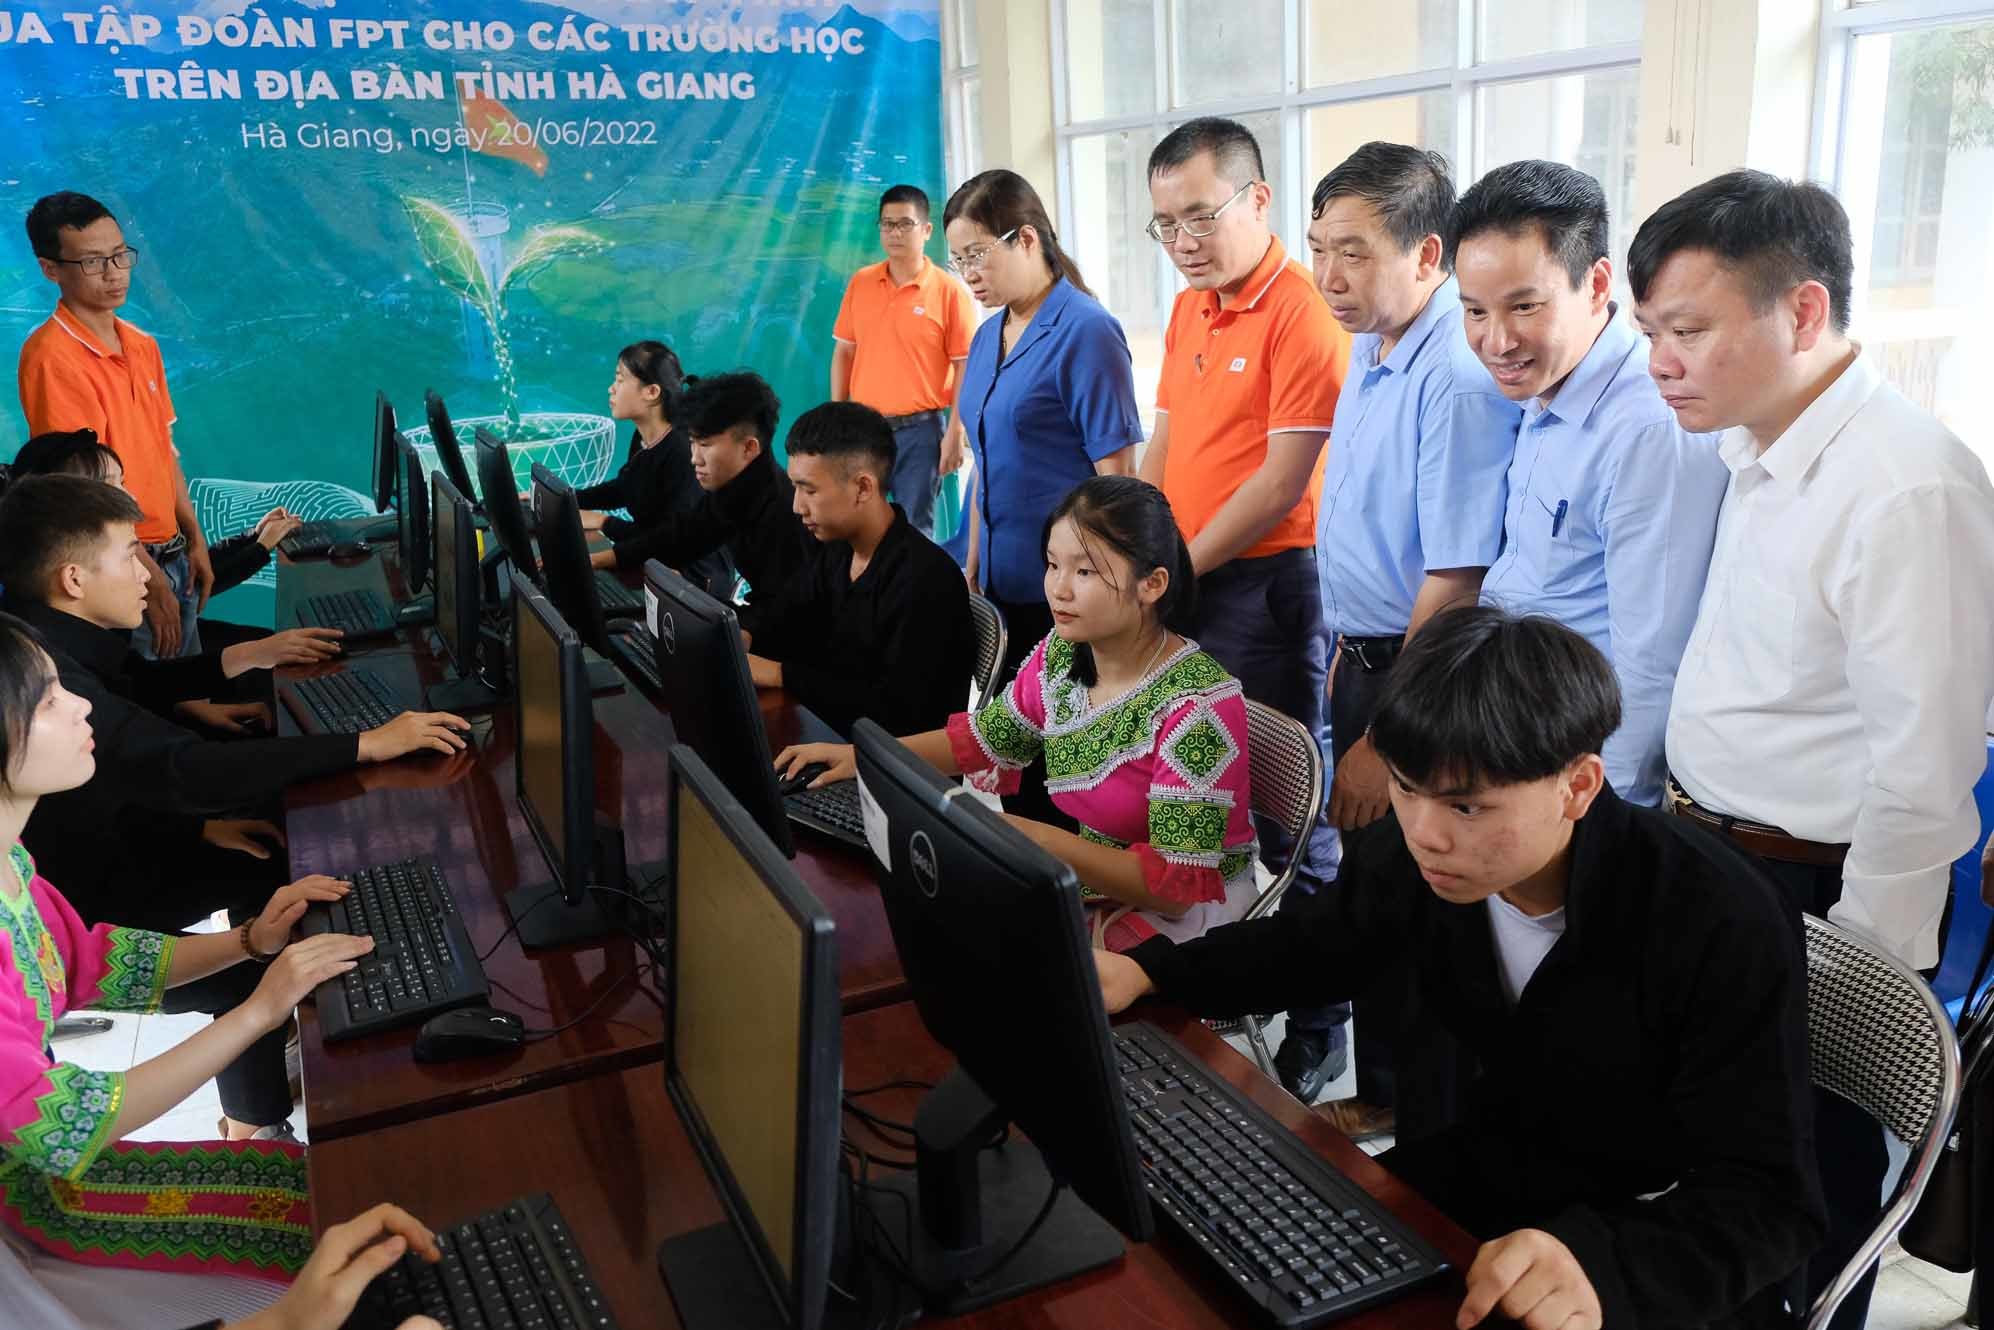 FPT tặng 1.000 máy tính cho các trường học tại Hà Giang